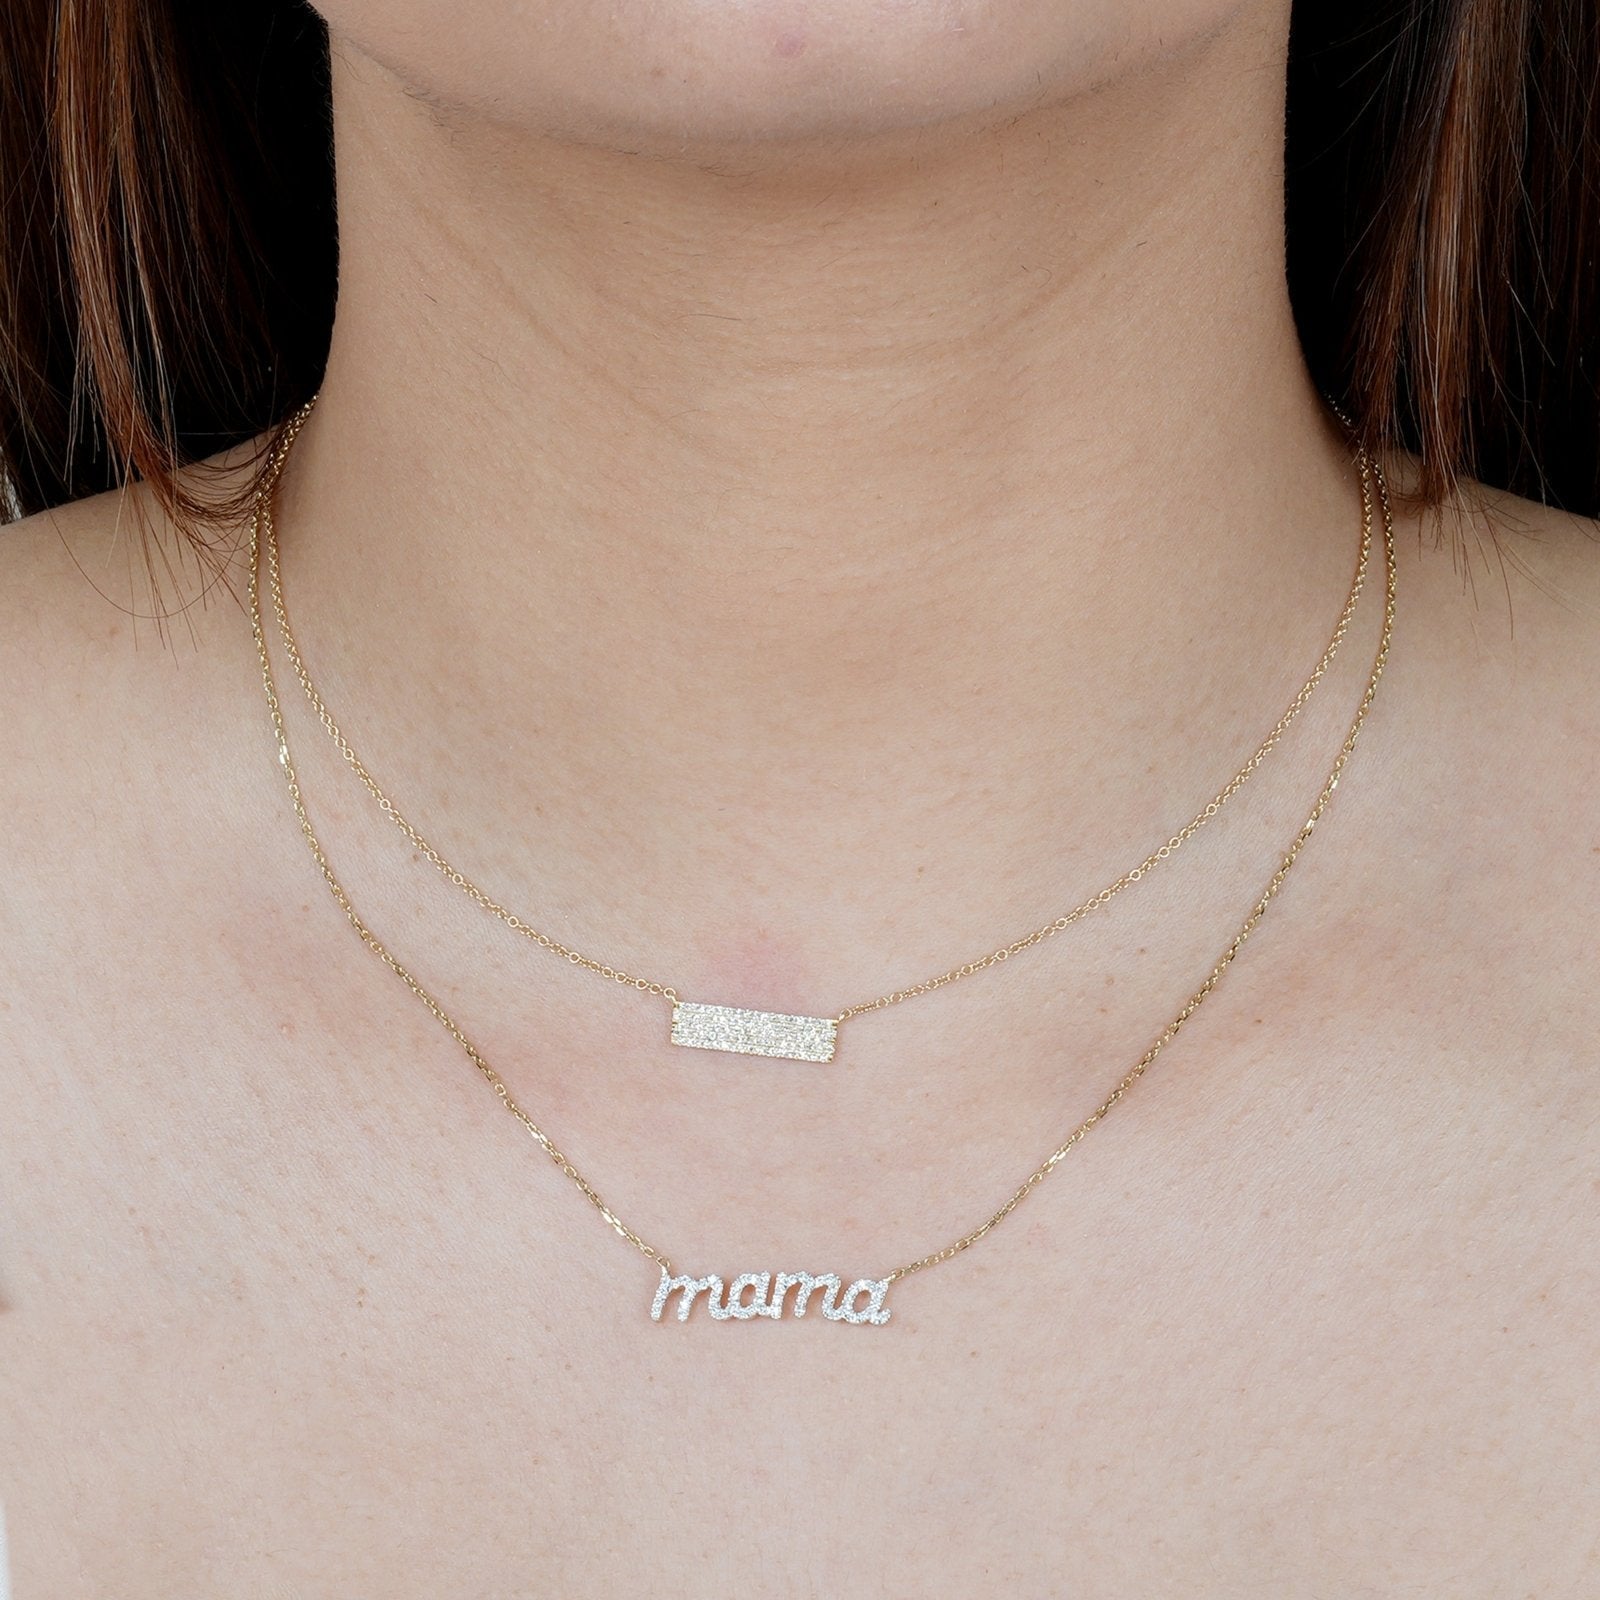 Five Row Diamond Pavé Bar Necklace Necklaces Estella Collection #product_description# 17723 14k Diamond Gemstone #tag4# #tag5# #tag6# #tag7# #tag8# #tag9# #tag10#